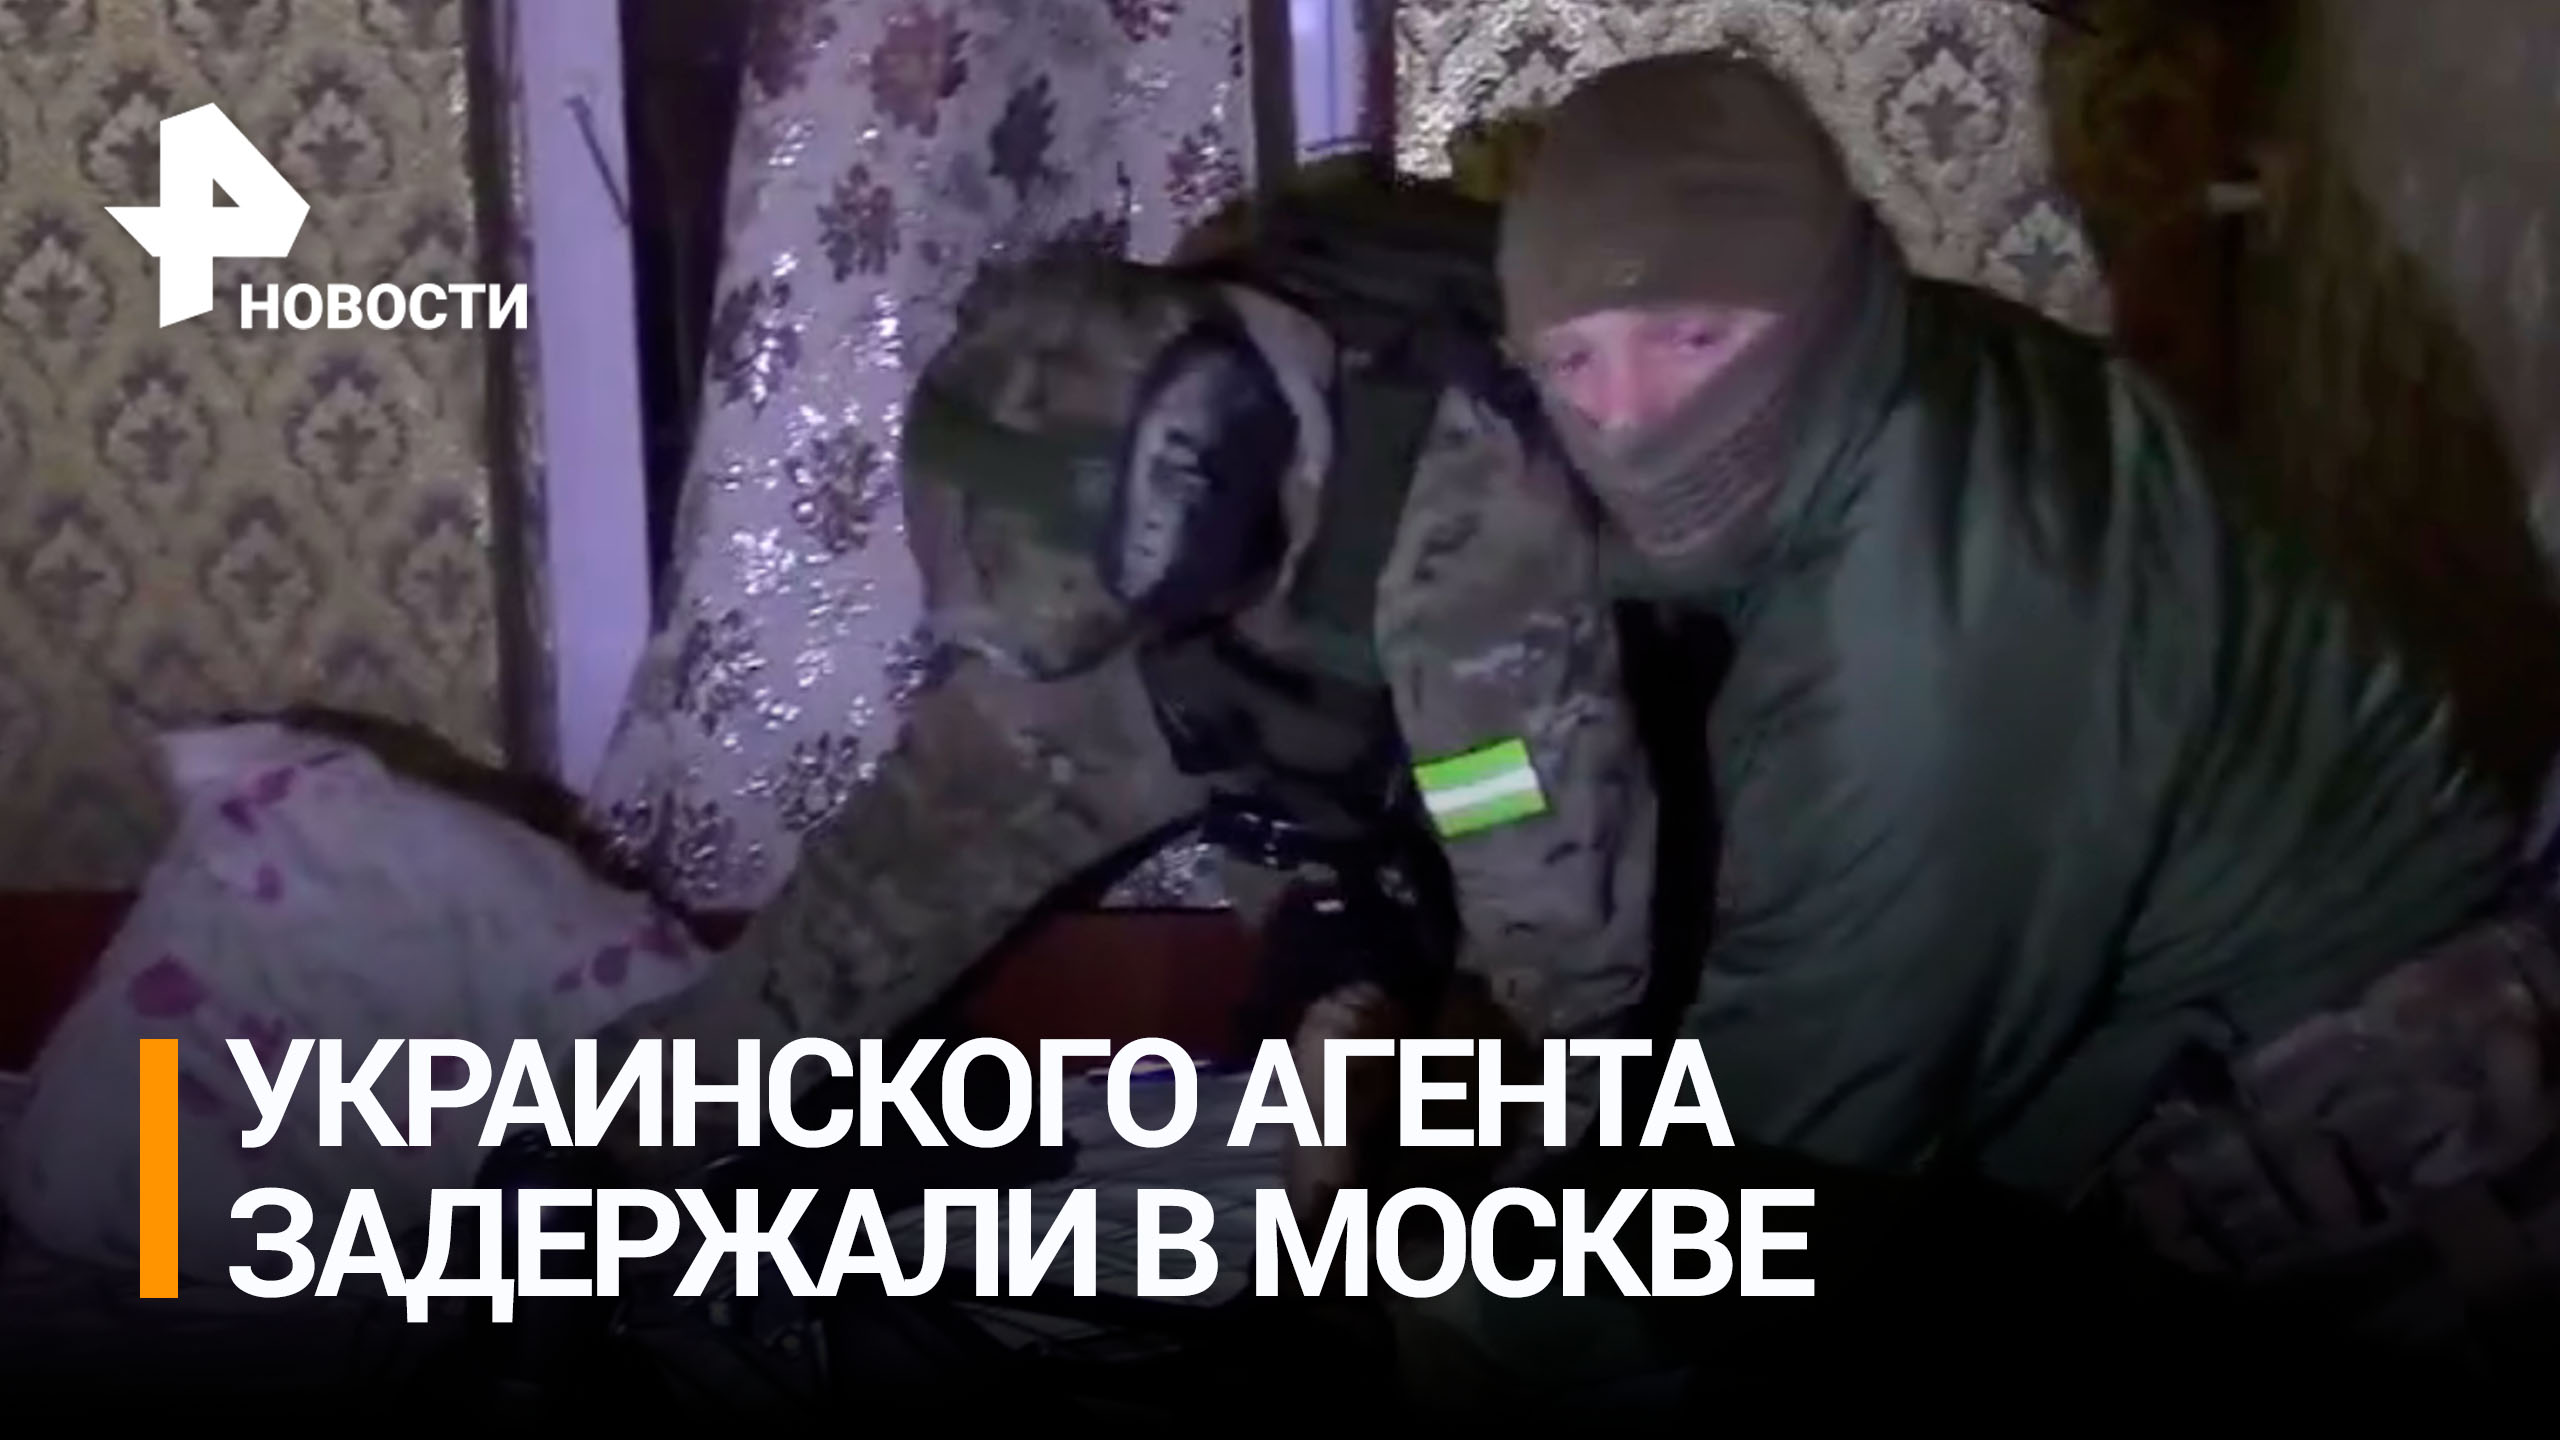 Кадры задержания украинского агента в Москве. Он запускал дроны у военных объектов / РЕН